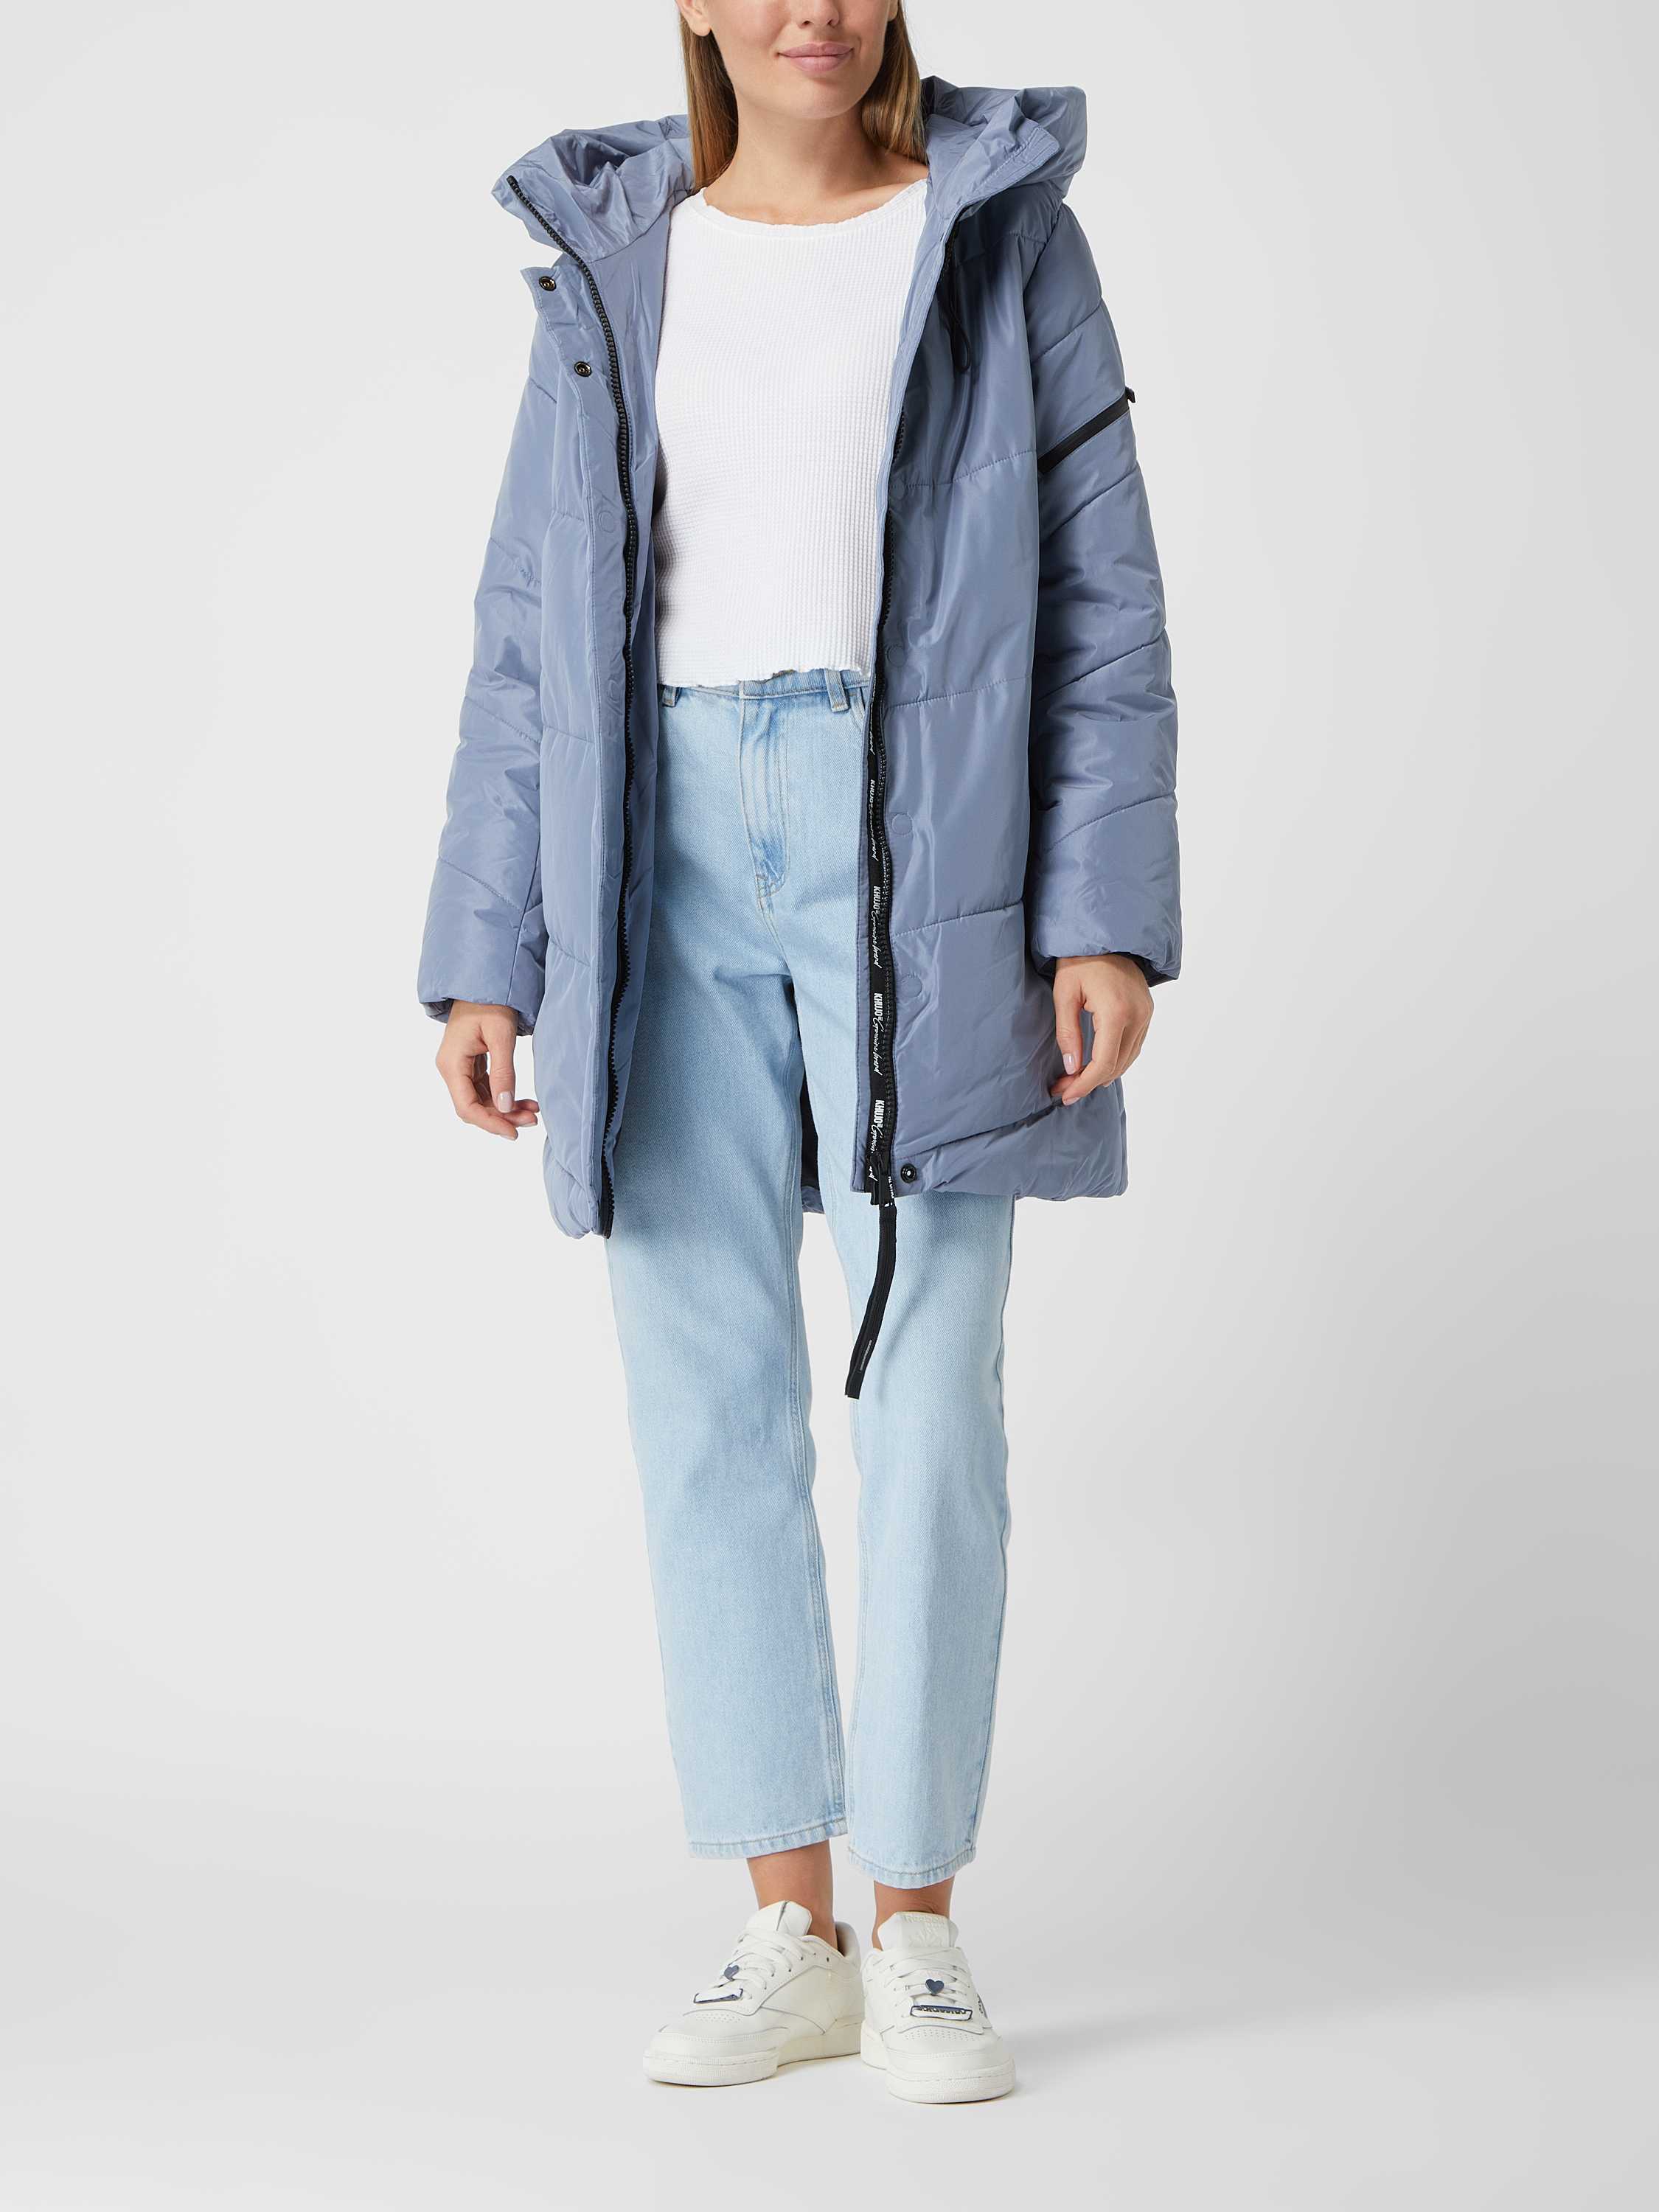 roem Kalmerend timer khujo Gewatteerde lange jas met capuchon, model 'Jordis4' in lichtblauw  online kopen | P&C